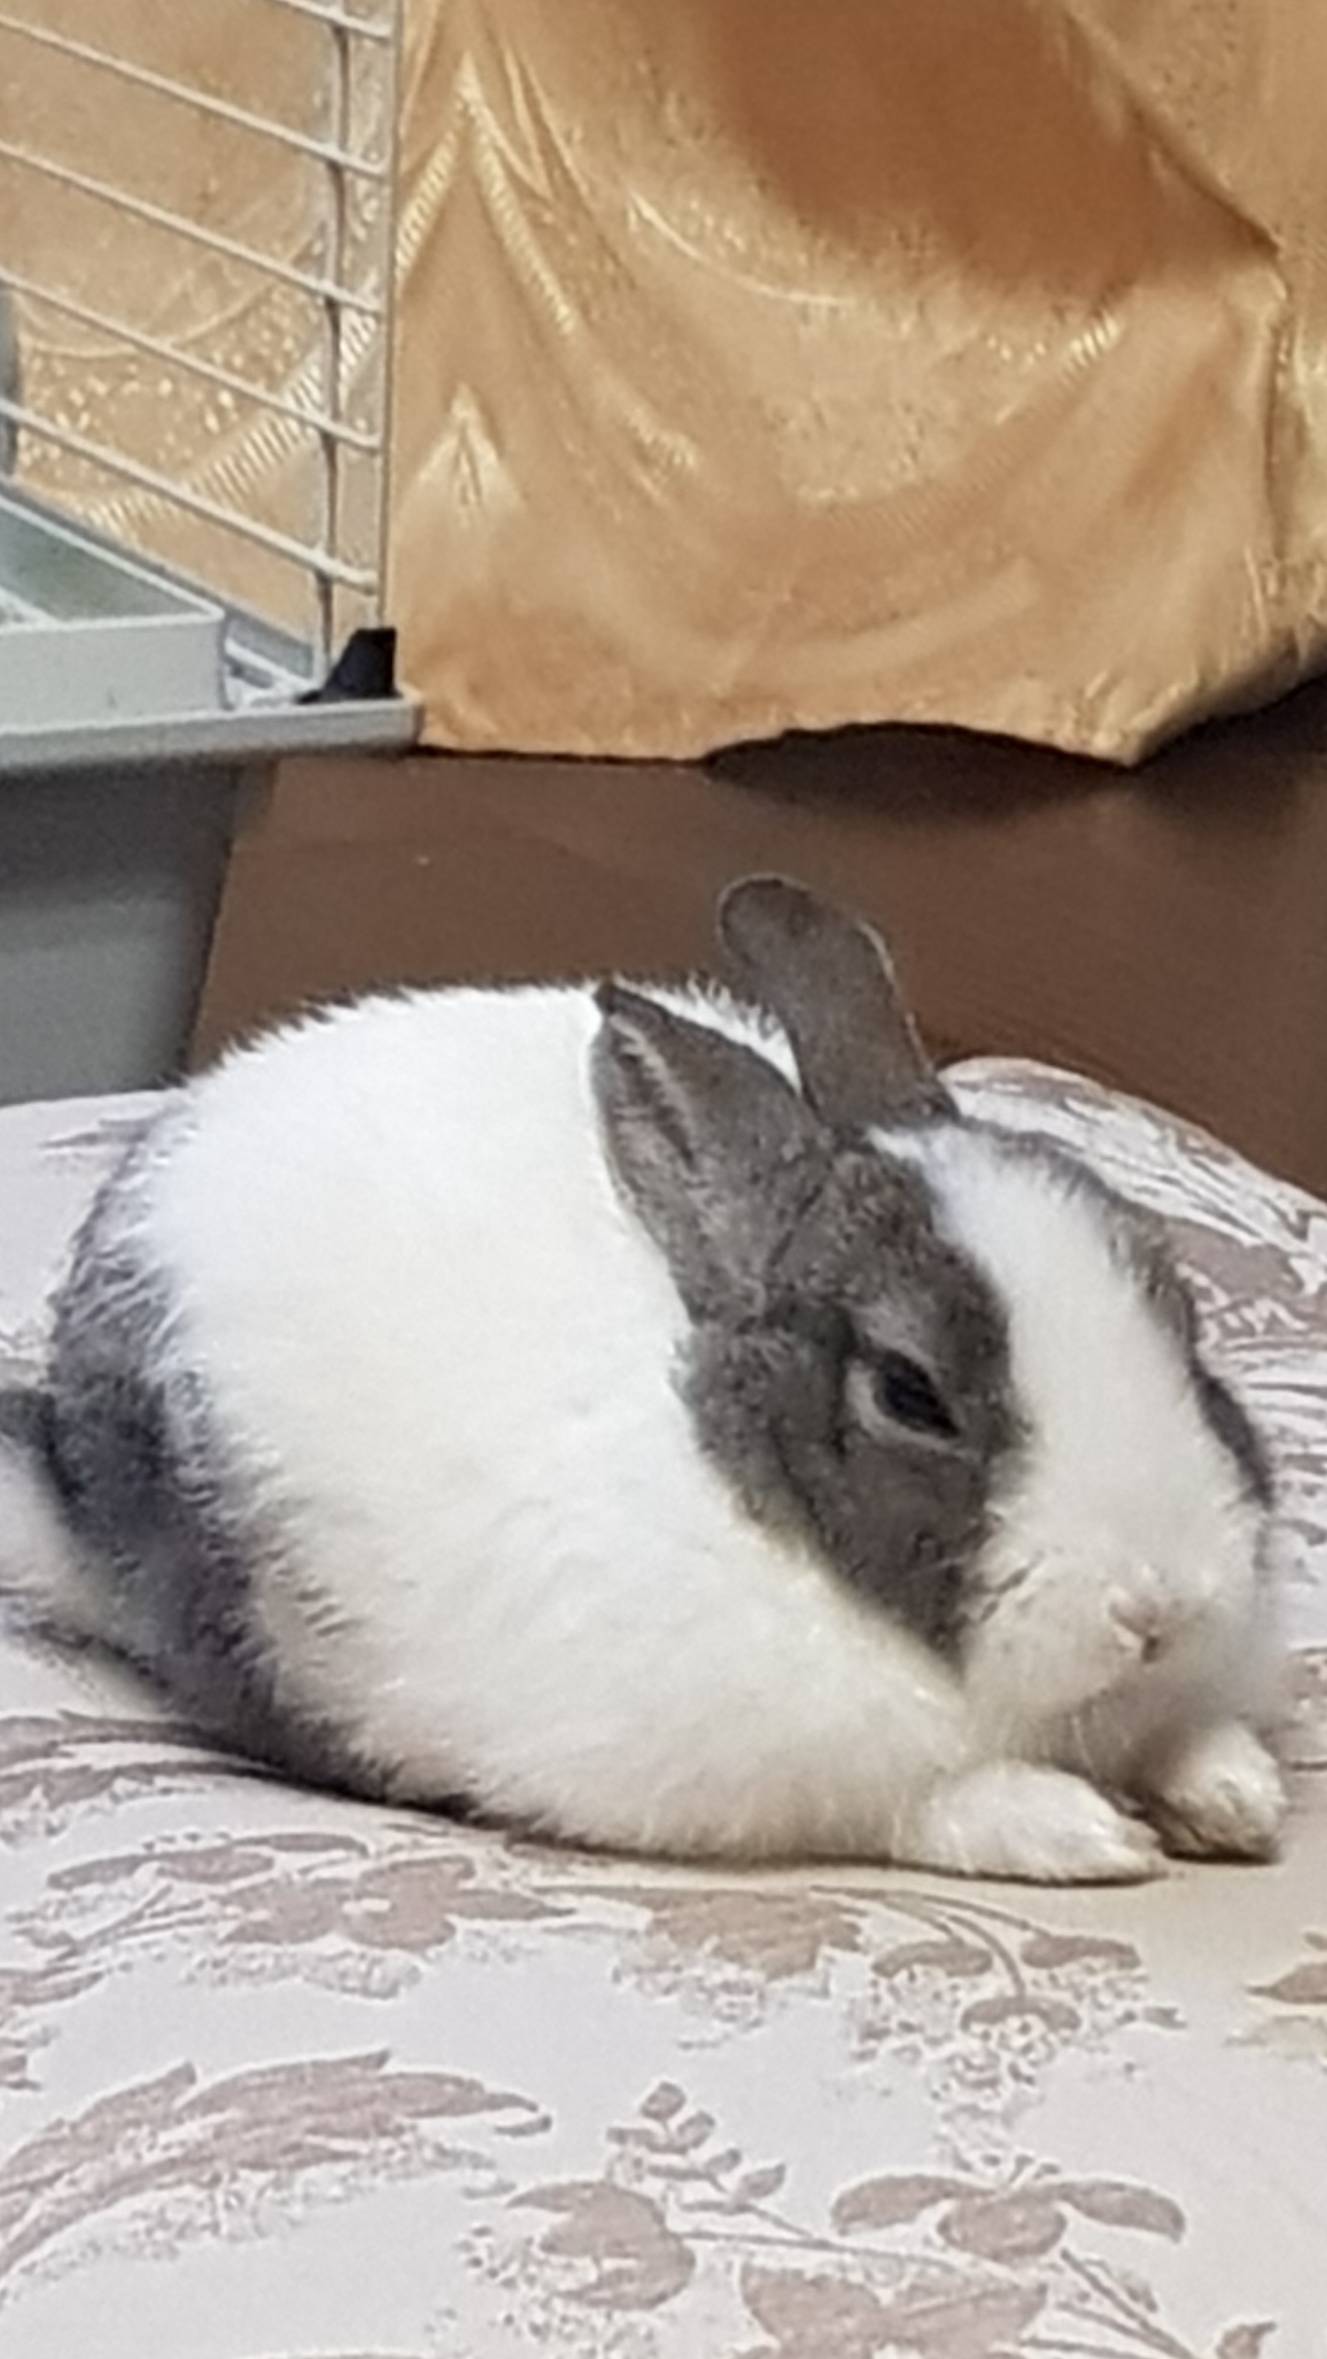 Cute rabbit enjoying life